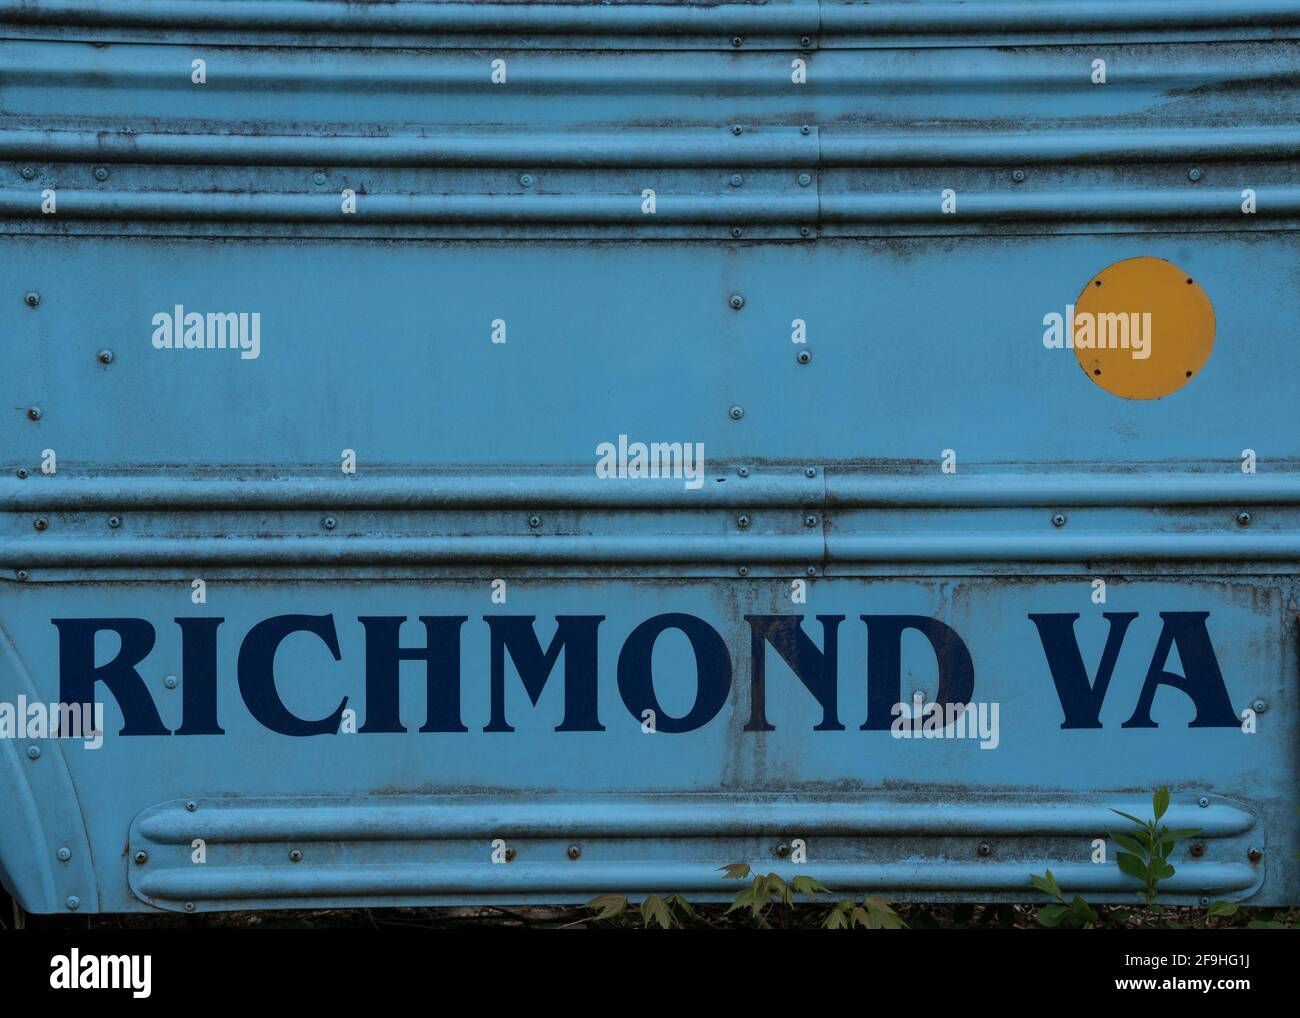 Richmond, VA grafico su bus abbandonato arrugginito - scritta blu su sfondo blu con rivetti Foto Stock